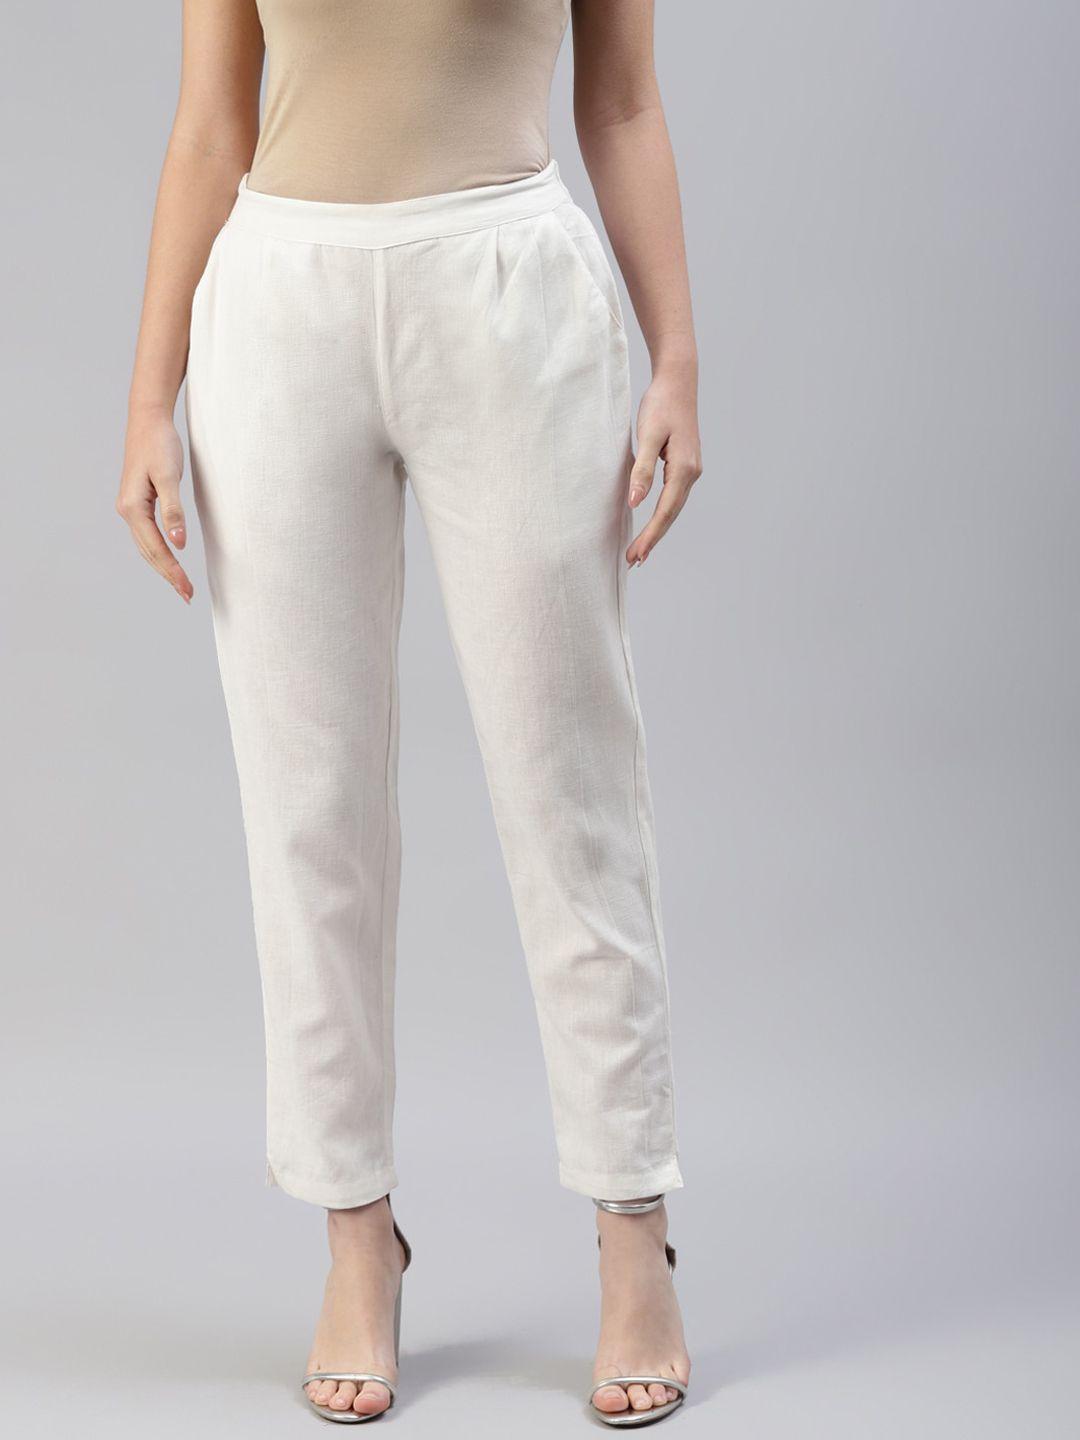 iridaa-jaipur-women-off-white-trousers